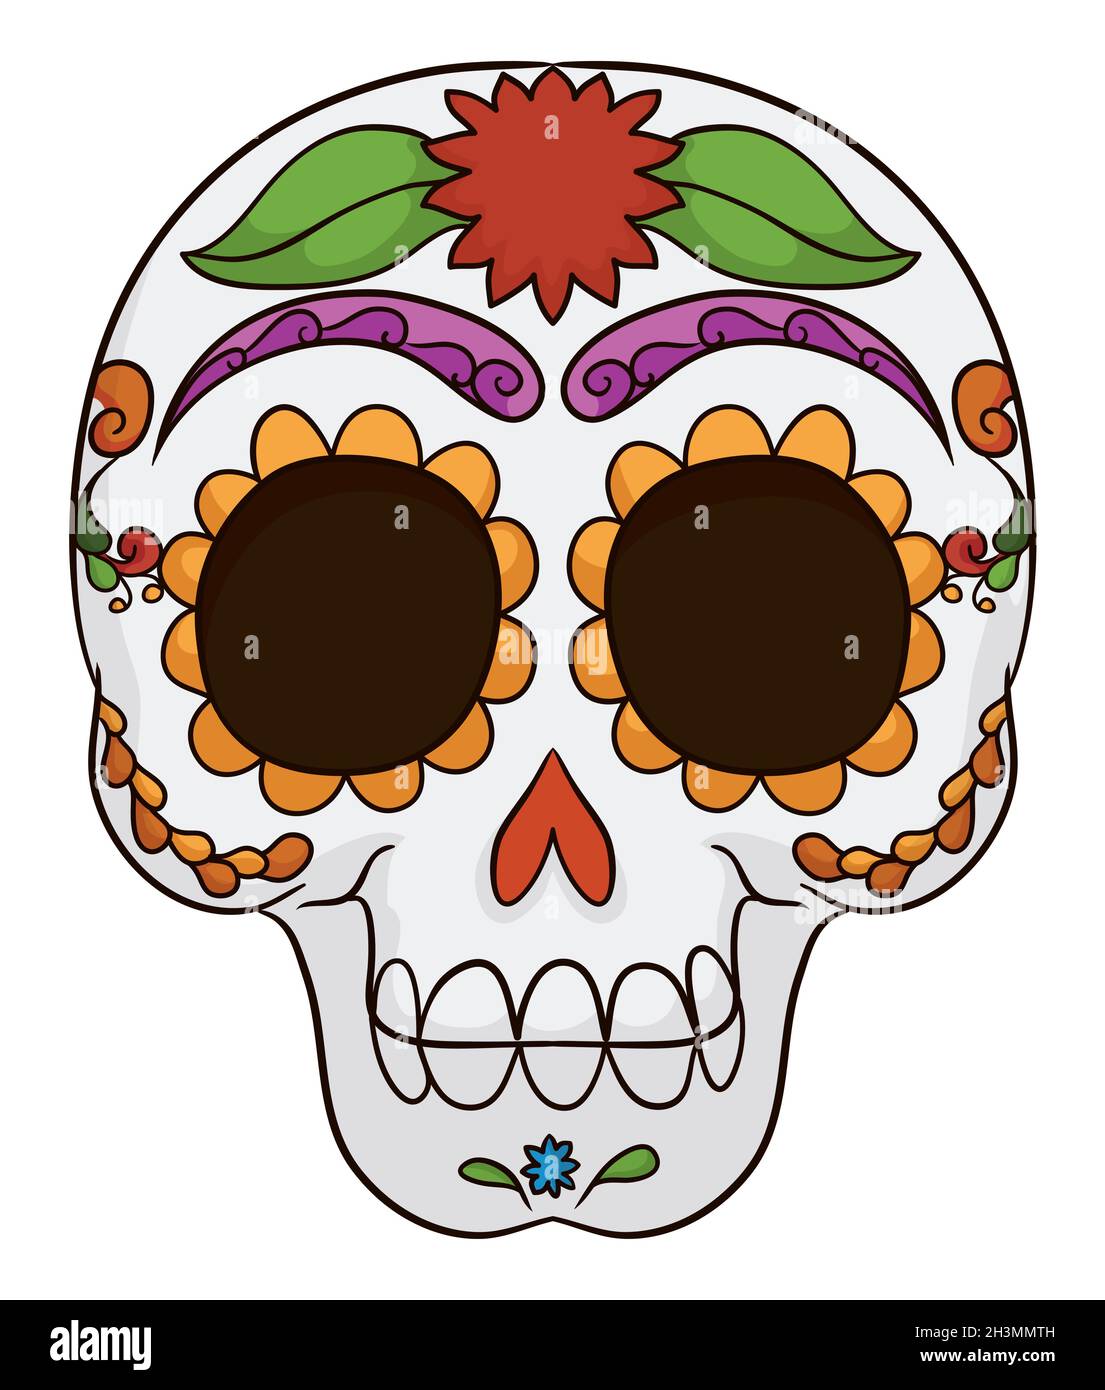 Crâne mexicain coloré avec vue frontale, décoré avec un motif et une fleur traditionnels pour le jour des morts. Illustration de Vecteur